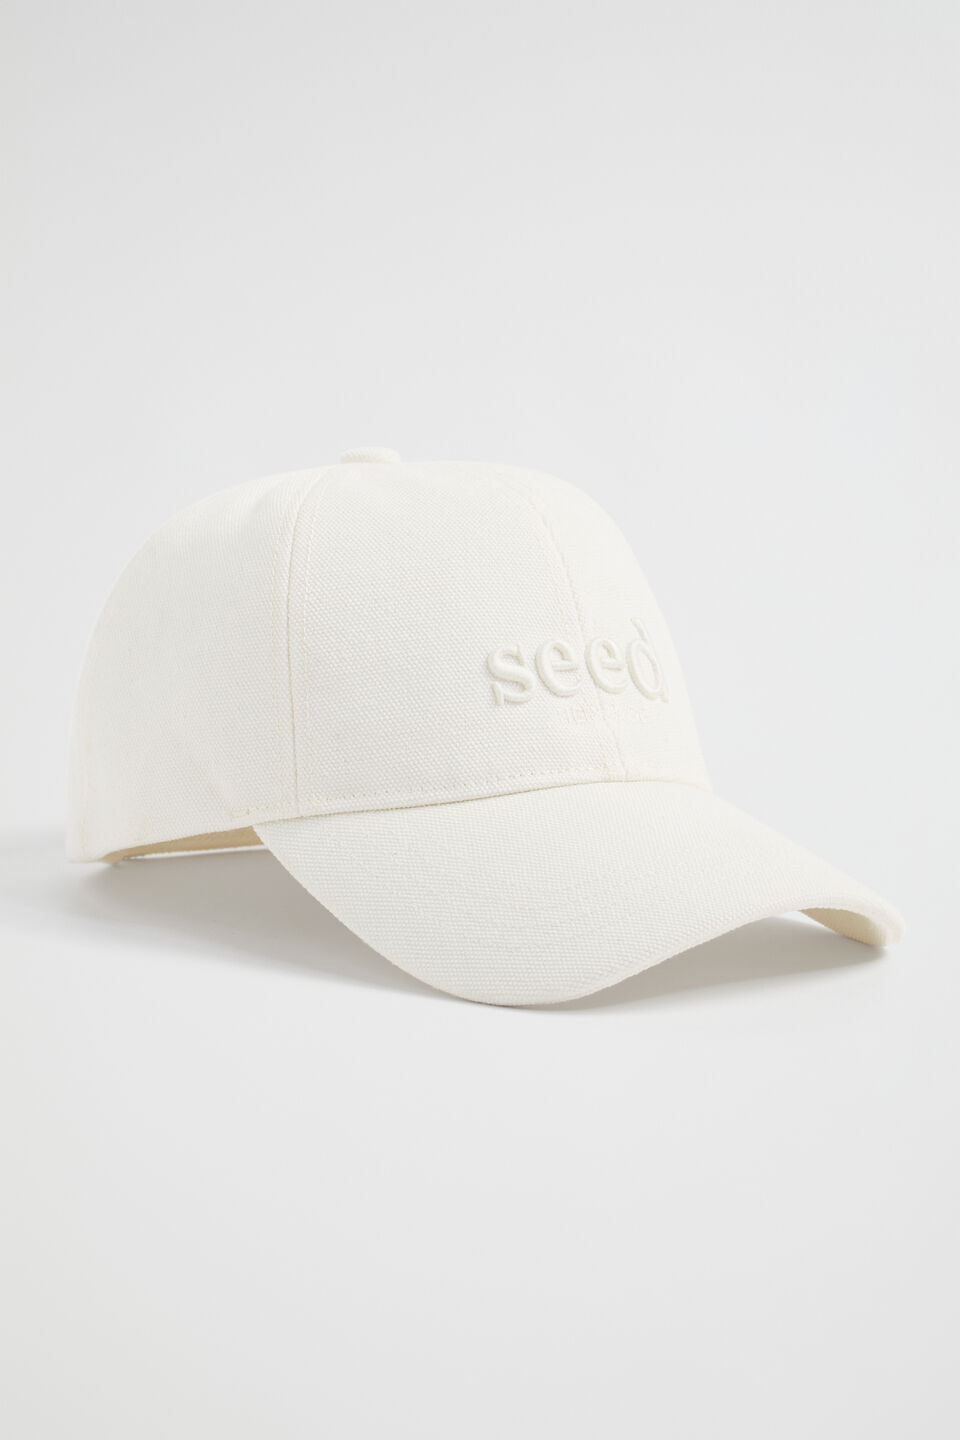 Seed Cap  Cream